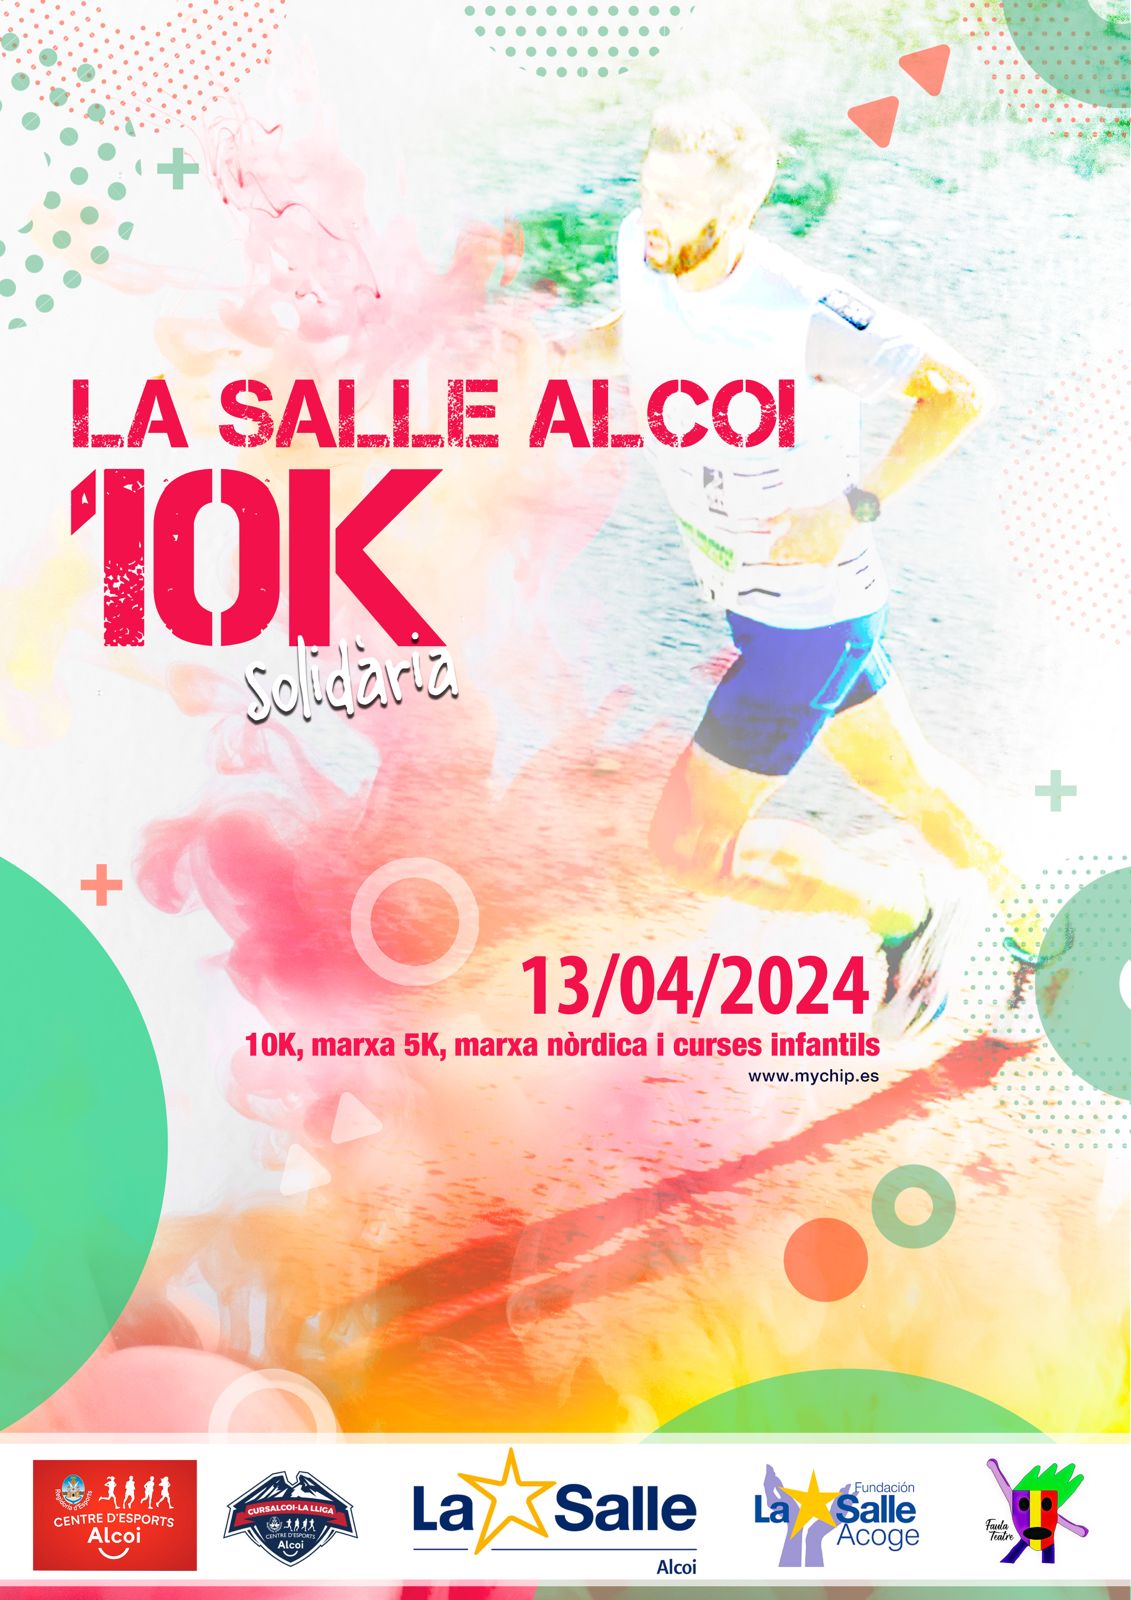 10k solidaria La Salle, 2024